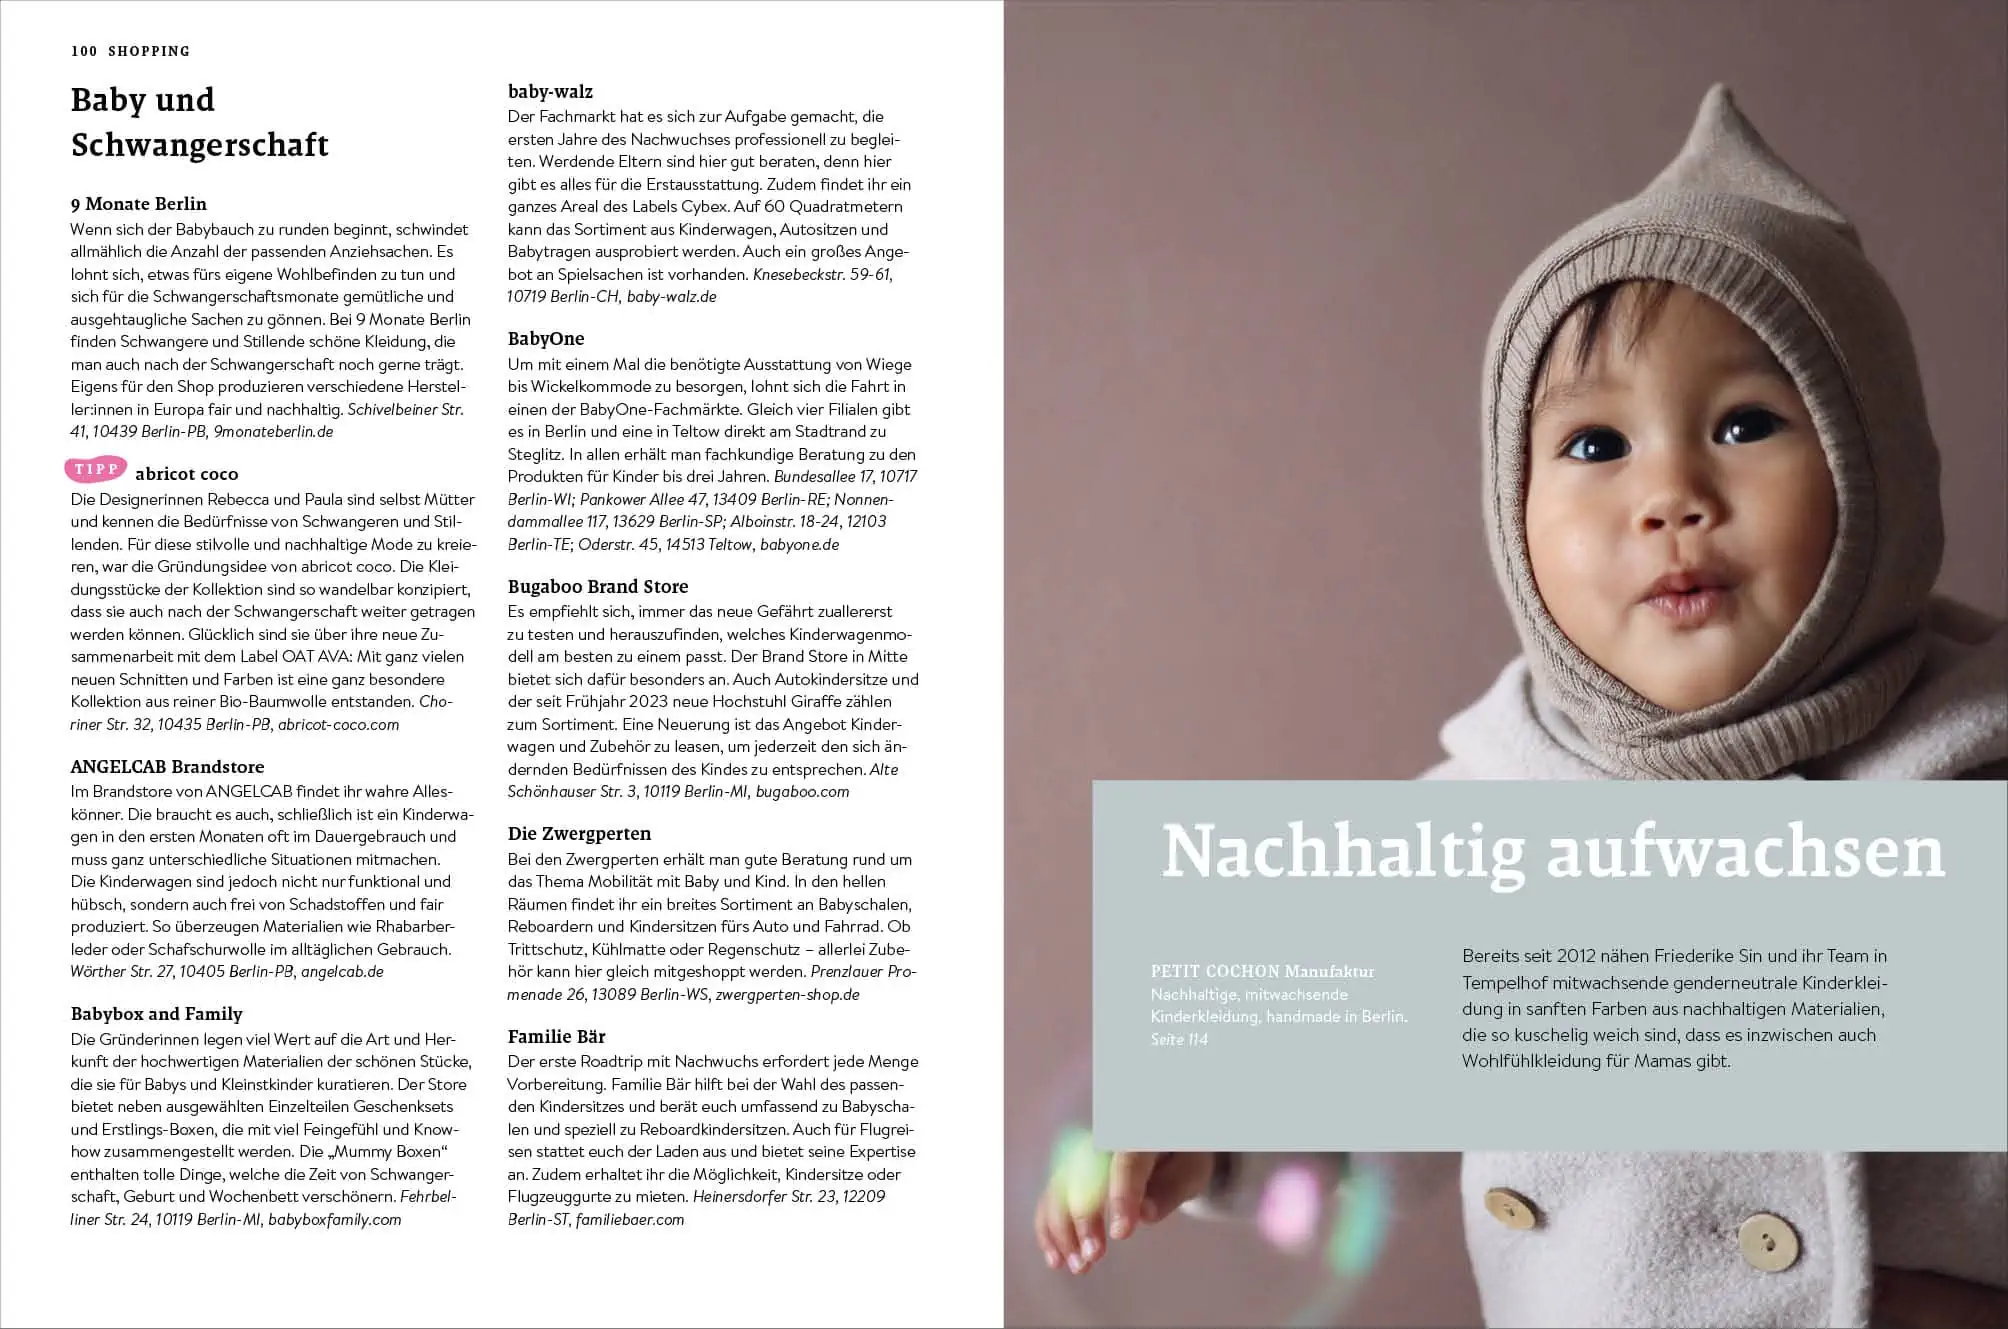 Das Jährlich Neu Erscheinende Buch Von Himbeer – Shoppingtipps Im Familien-Freizeit-Guide Berlin Mit Kind 2024 // Himbeer